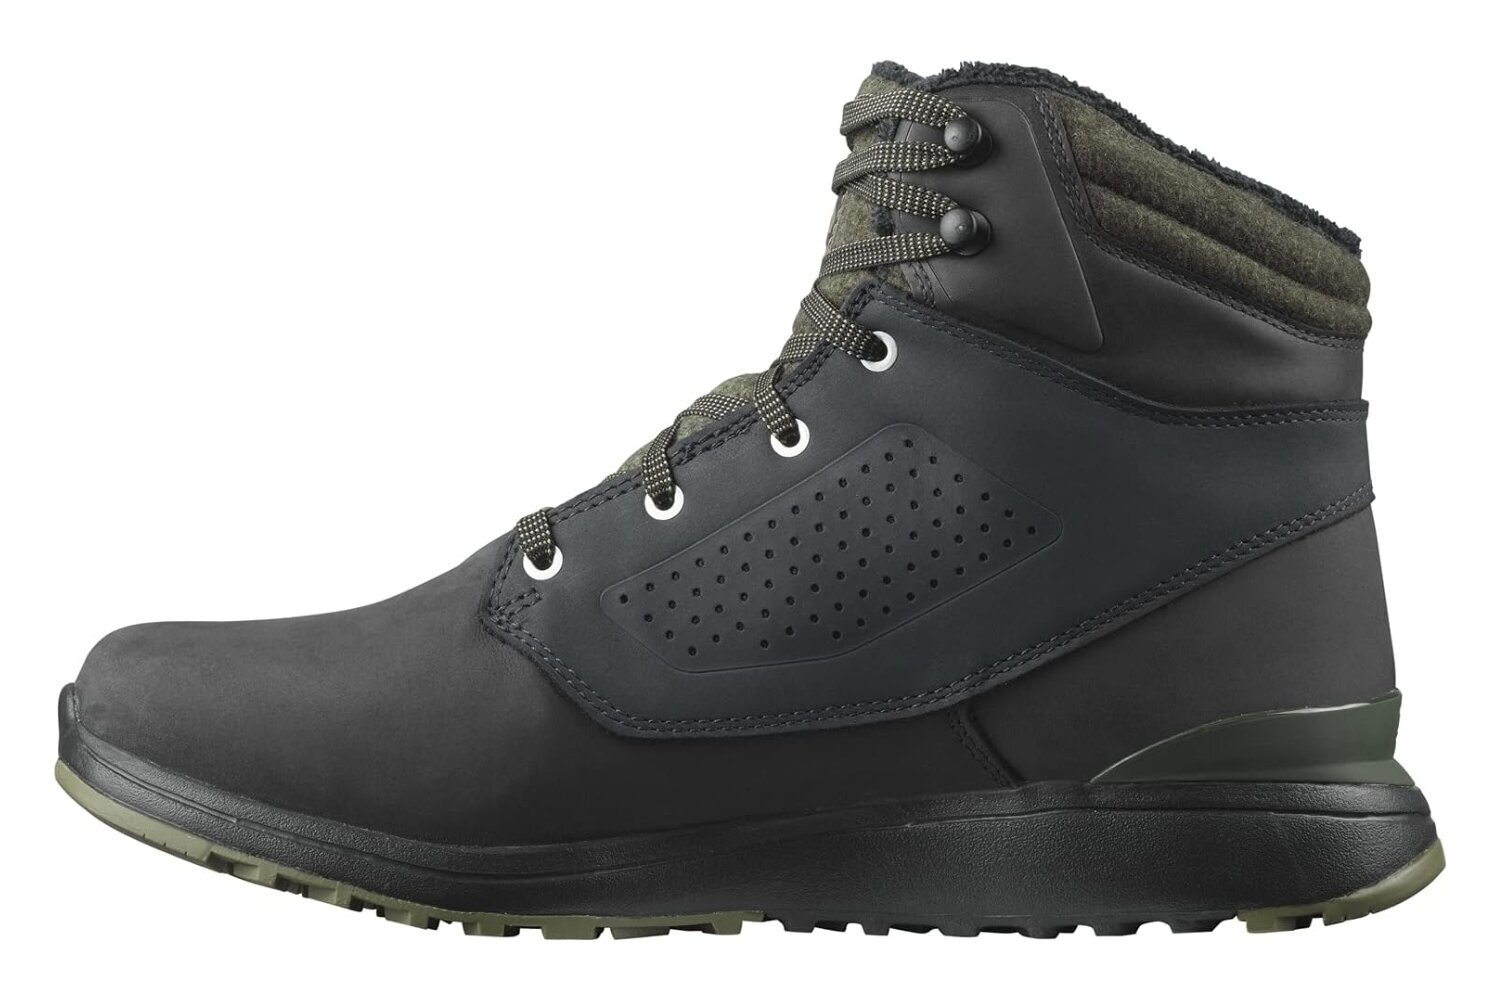 Žieminiai batai vyrams Salomon 414455, juodi kaina ir informacija | Vyriški batai | pigu.lt